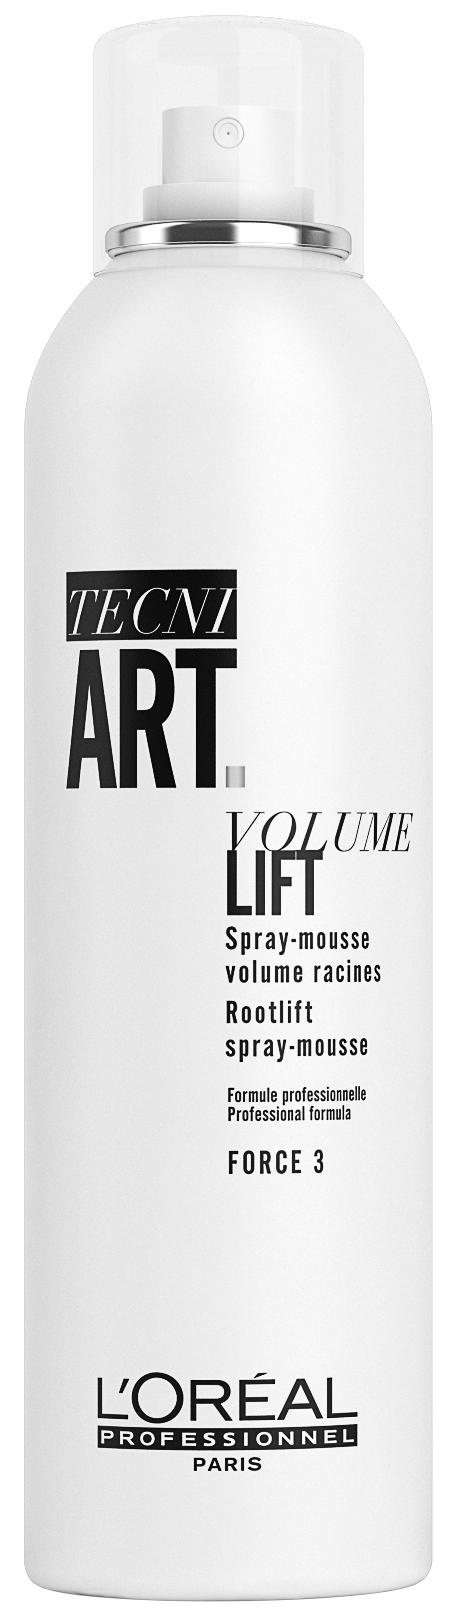 Tecni art Air Volume Lift Mousse, 250 ml